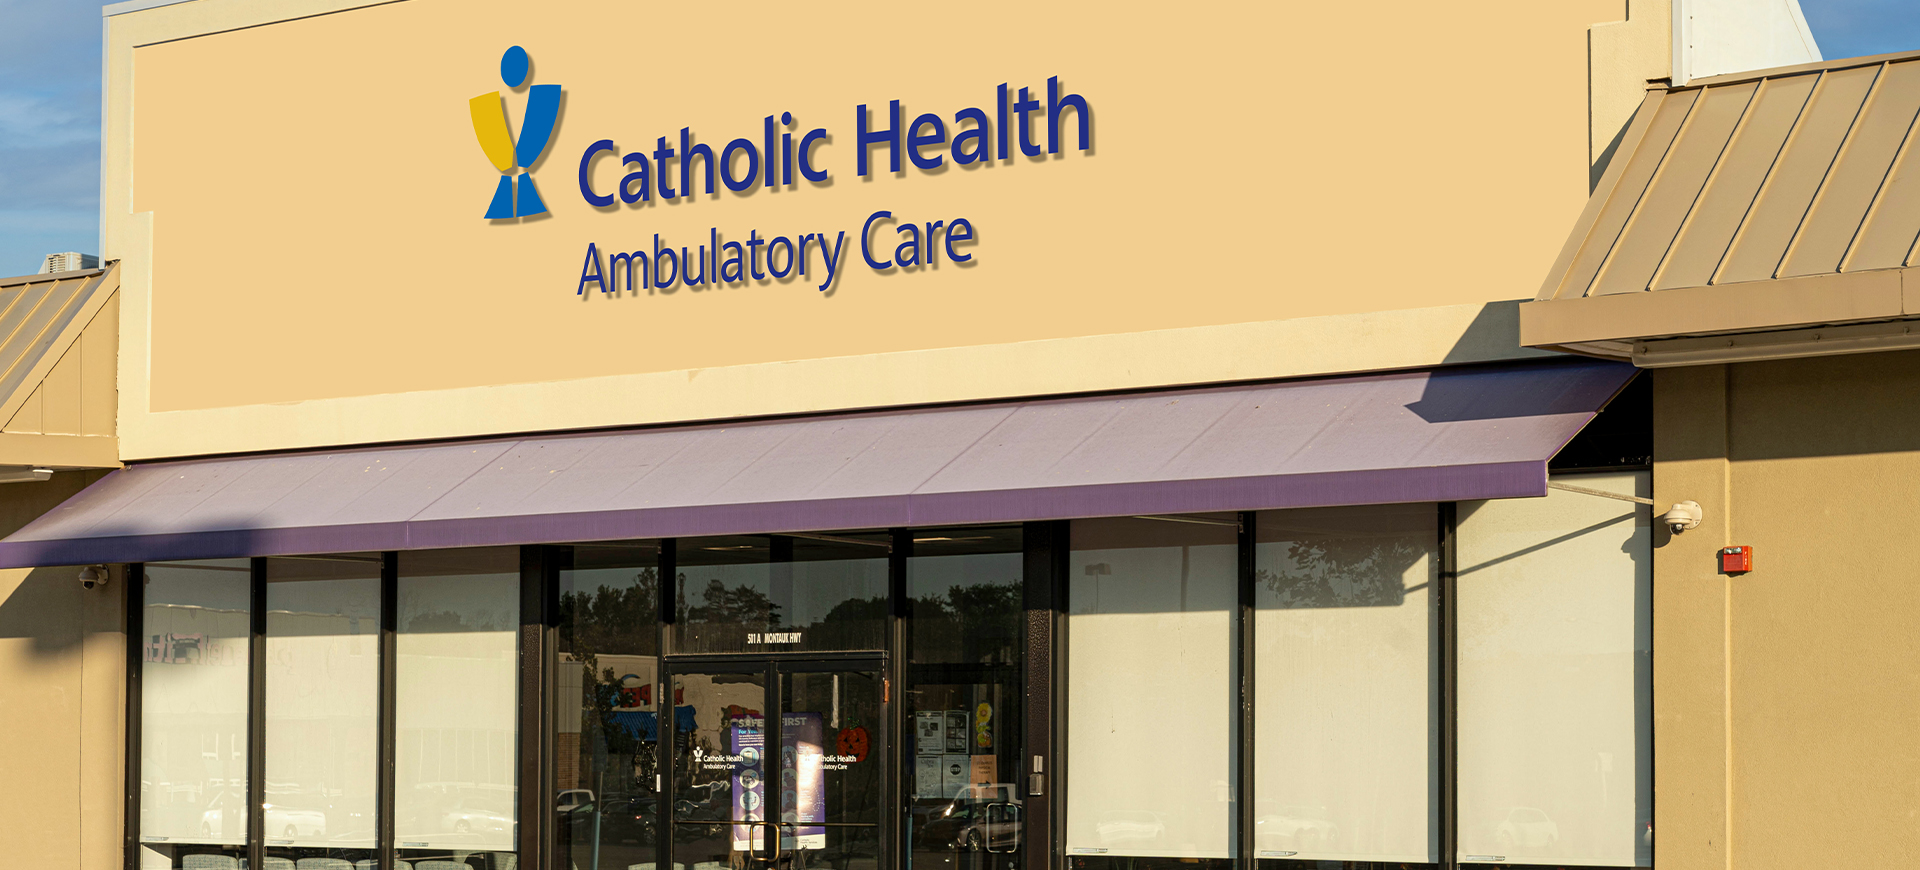       	        
	  	  Catholic Health Ambulatory Care at West Babylon
	  	  
	        